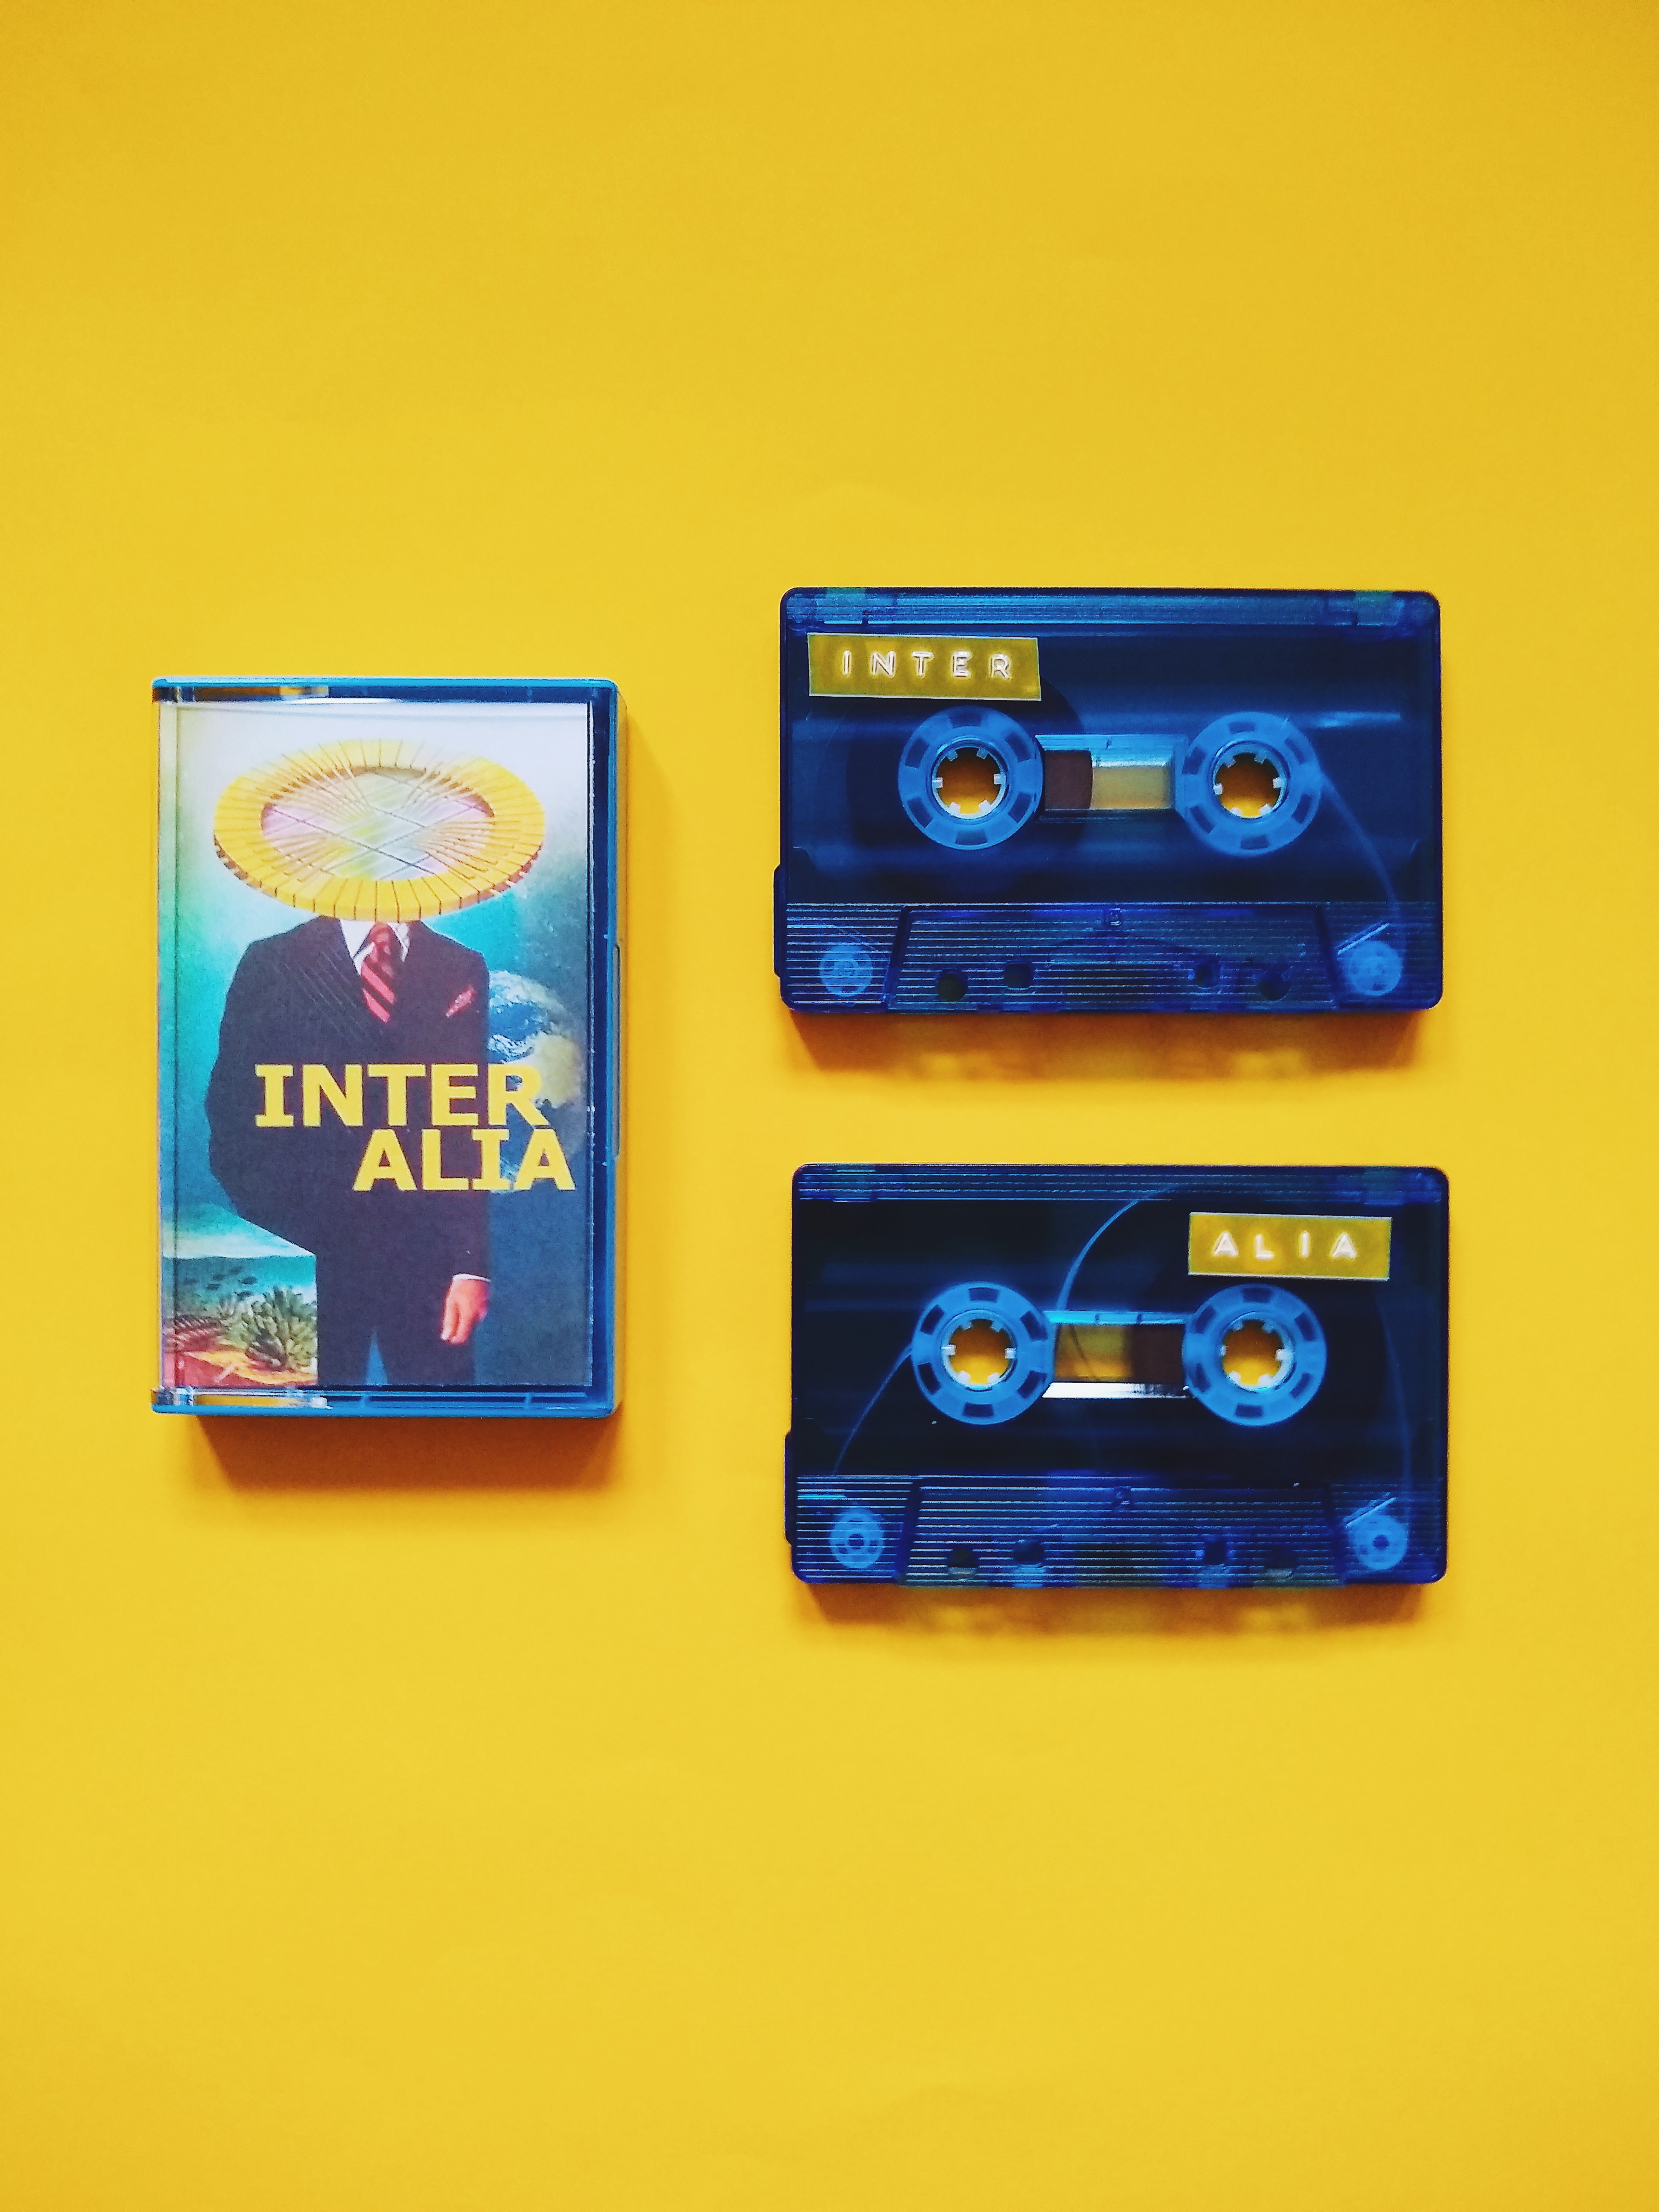 inter alia cassette tape